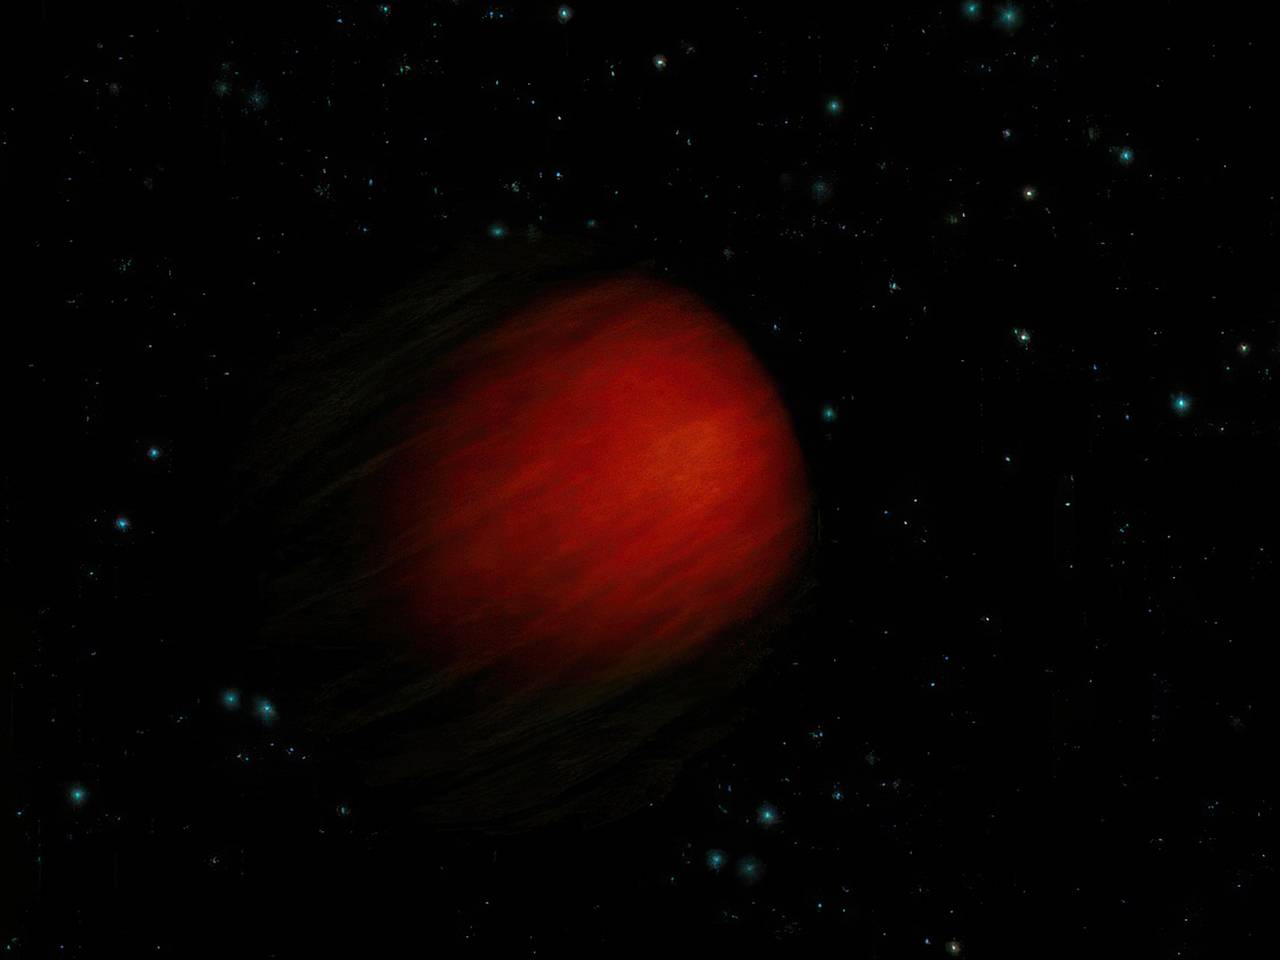 Открытие новых миров. Смертриос — экзопланета у звезды HD 149026, находящаяся на расстоянии приблизительно 257 световых лет от Солнца в созвездии Геркулеса. Фото.